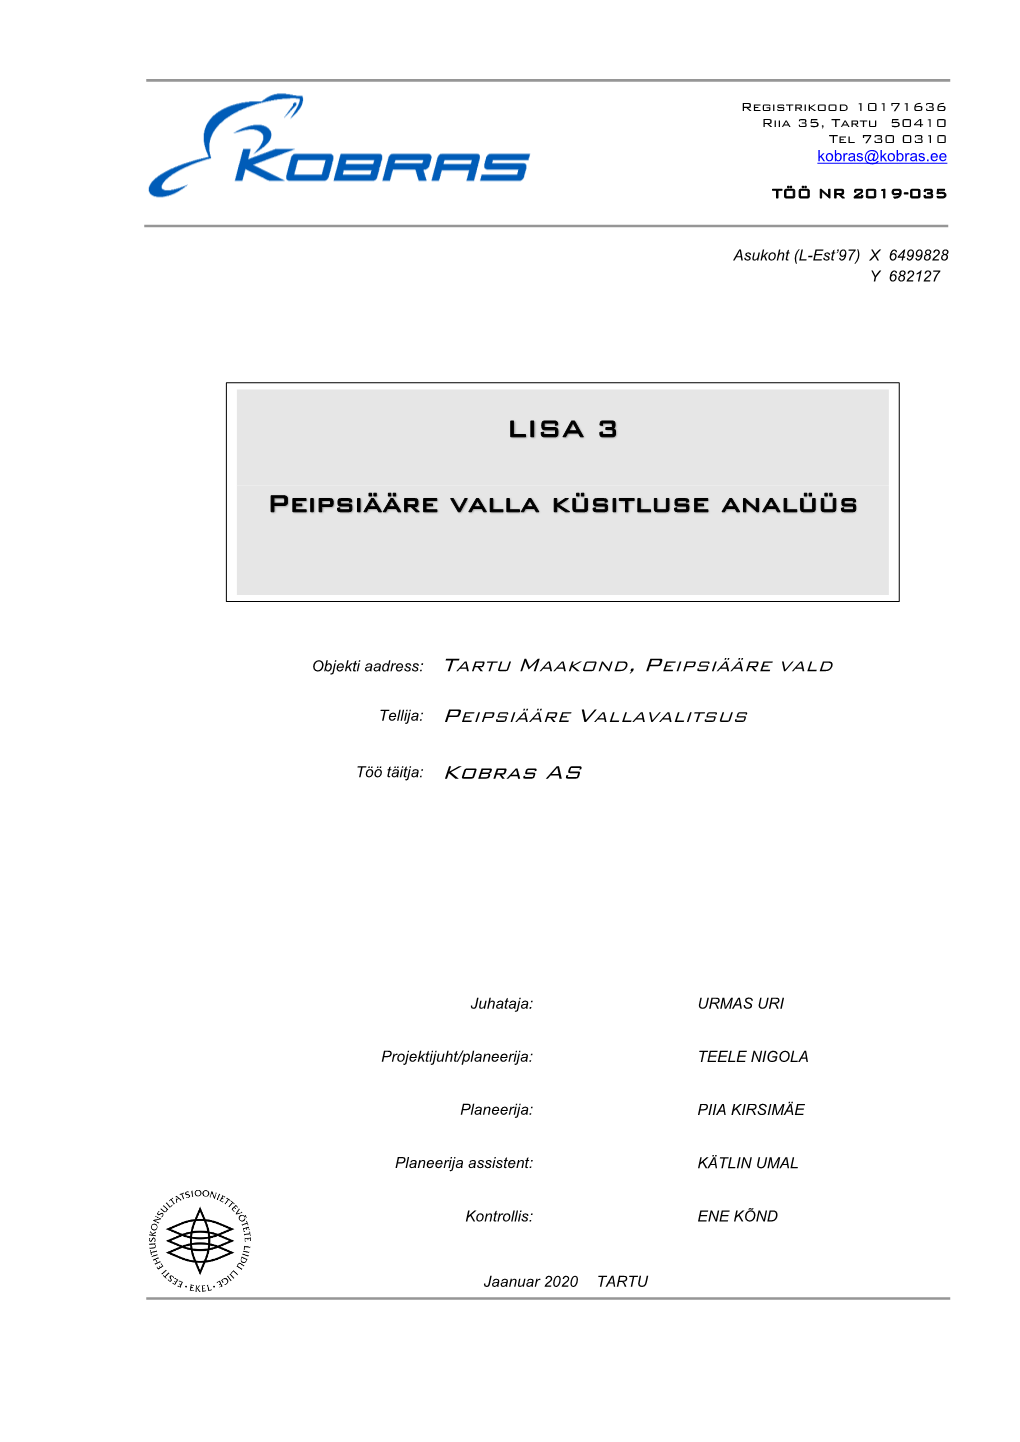 LISA 3 Peipsiääre Valla Küsitluse Analüüs